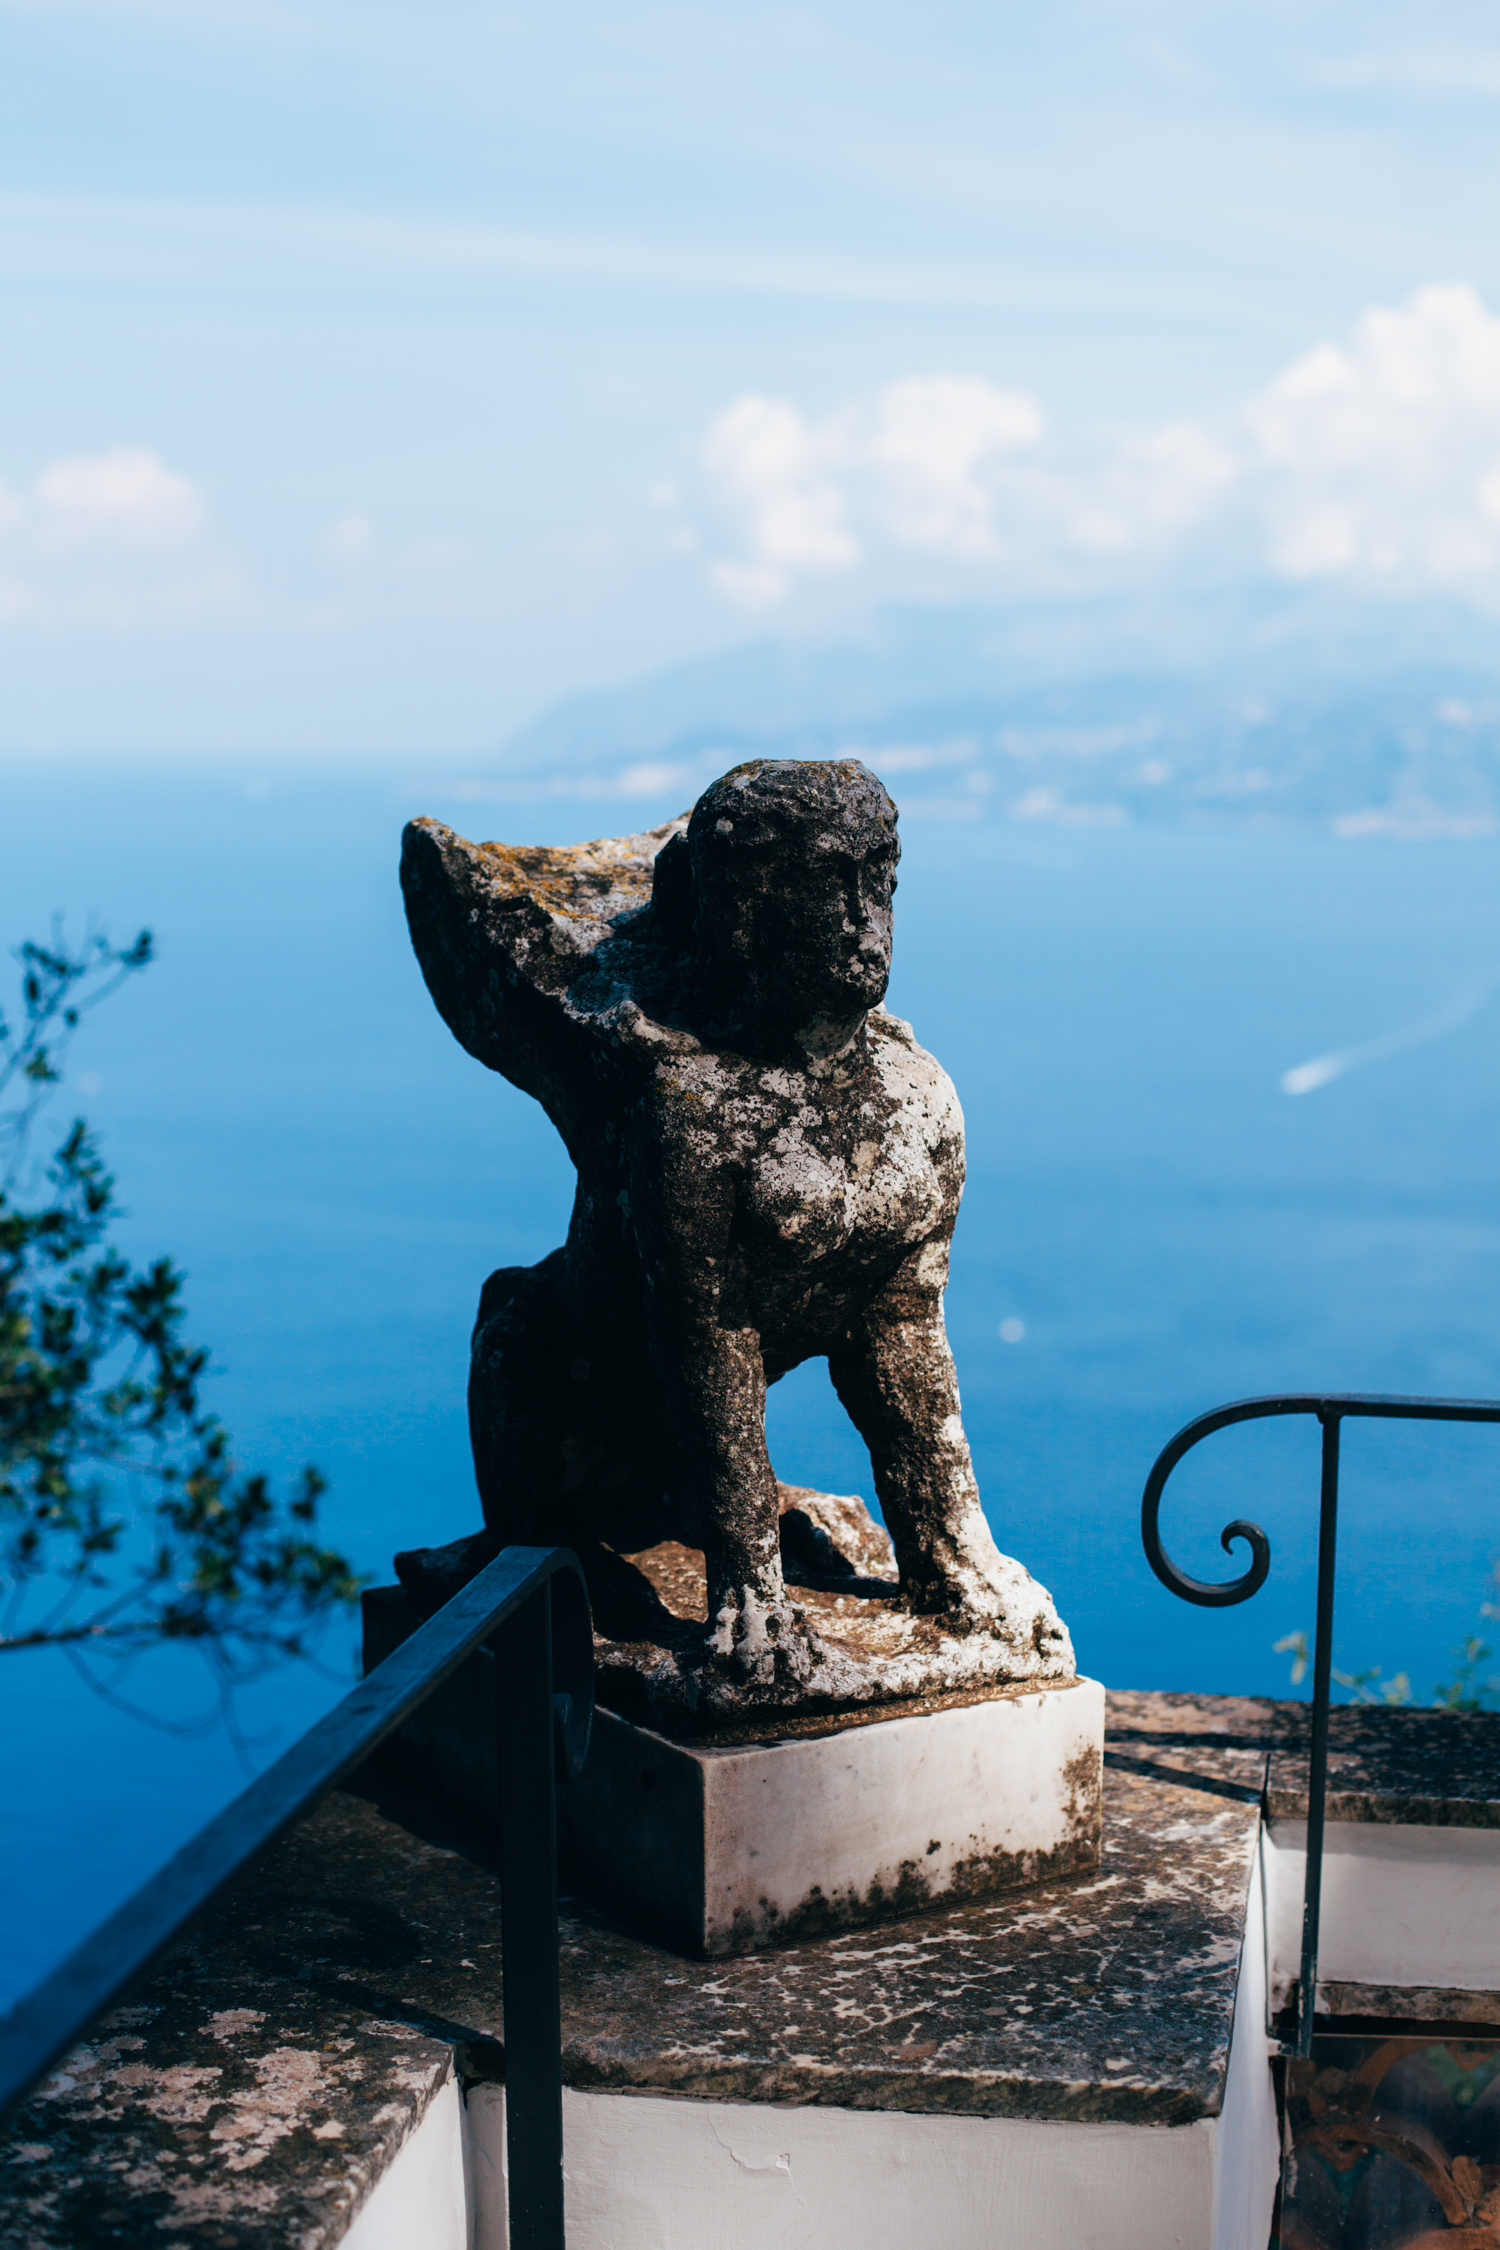 Travel Notes: Italy (Rome and the Amalfi Coast) - Golubka Kitchen